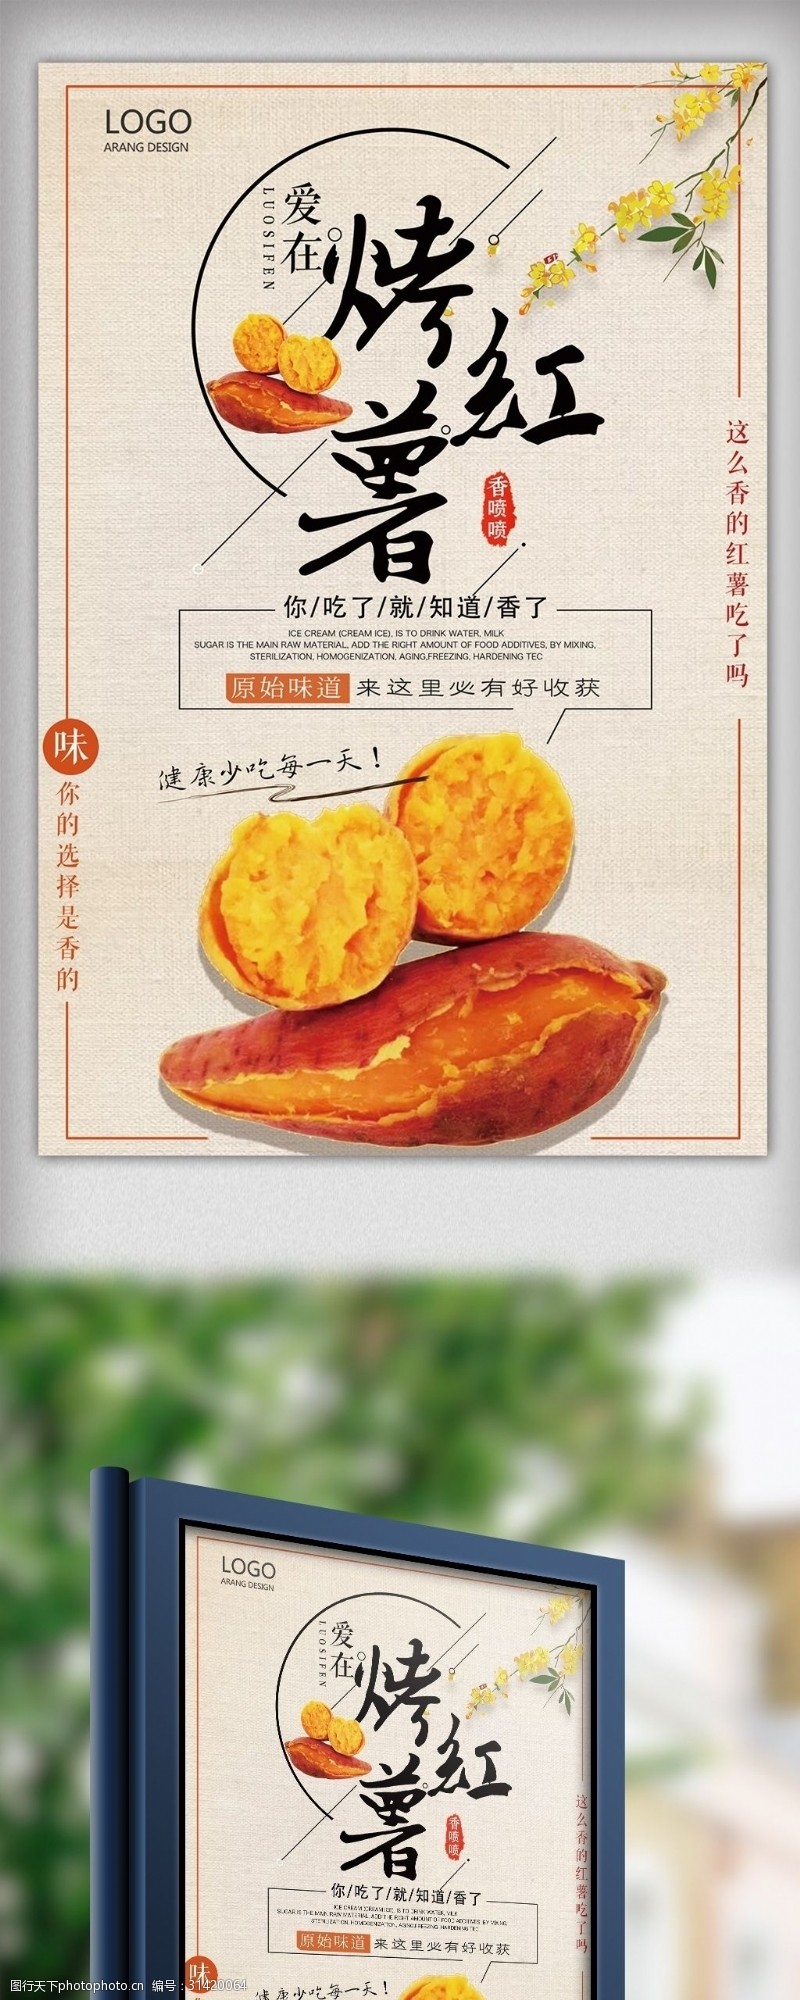 壁挂炉海报大气简约美味烤红薯宣传海报设计